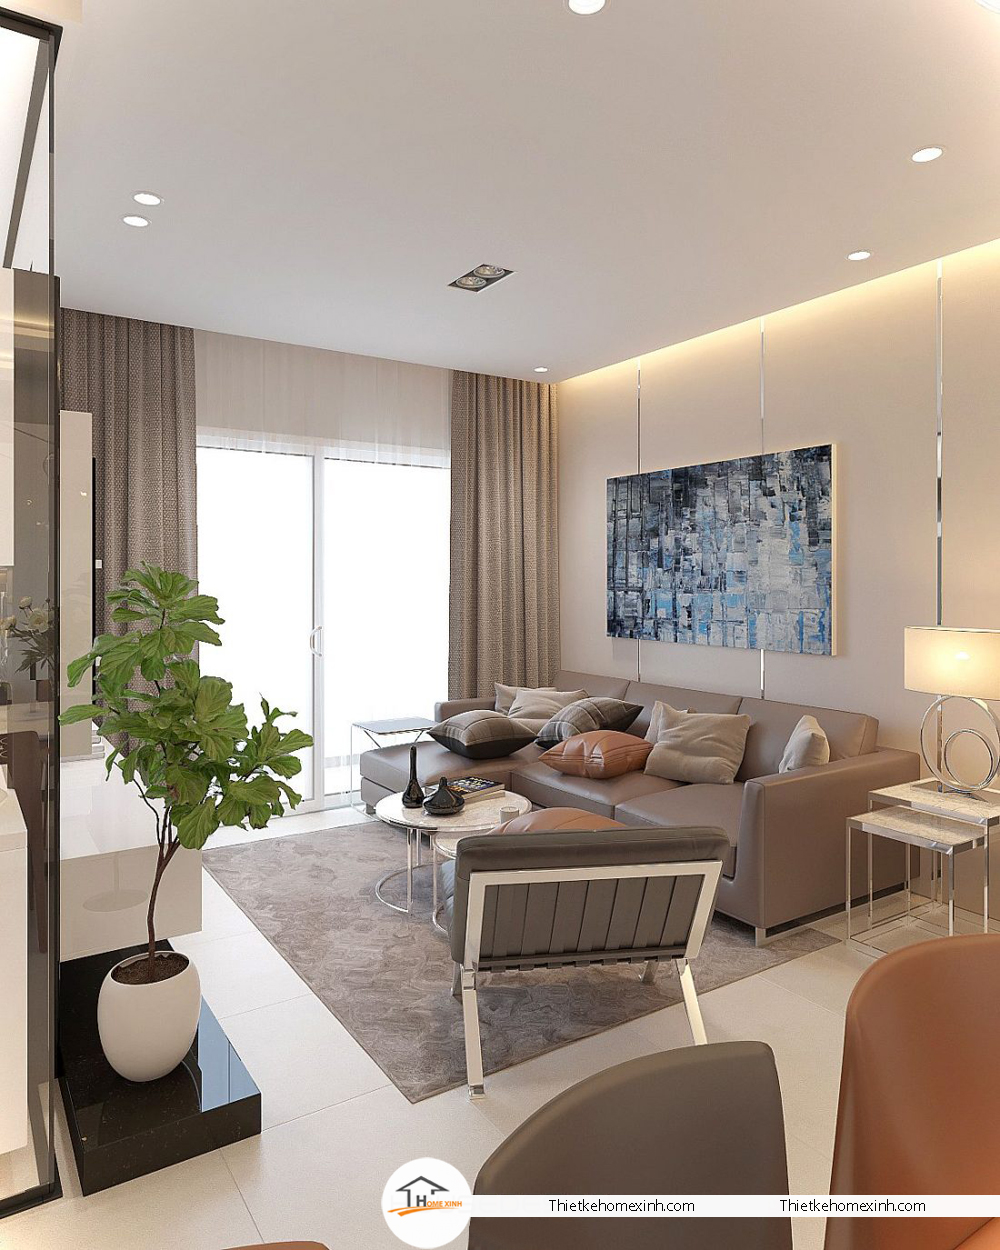 PCC1 Complex Ha Đông nổi tiếng với thiết kế chung cư hiện đại, sáng tạo và đẳng cấp. Chúng tôi tin tưởng rằng thiết kế nội thất căn hộ chung cư sẽ khiến bạn thích thú. Chúng tôi cam kết đem đến cho khách hàng những sản phẩm chất lượng cao, sử dụng những loại vật liệu tốt nhất để tạo ra một không gian sống an cư đáng tin cậy và tiện nghi. Hãy để chúng tôi chứng minh với bạn giá trị của căn hộ tại PCC1 Complex Hà Đông.